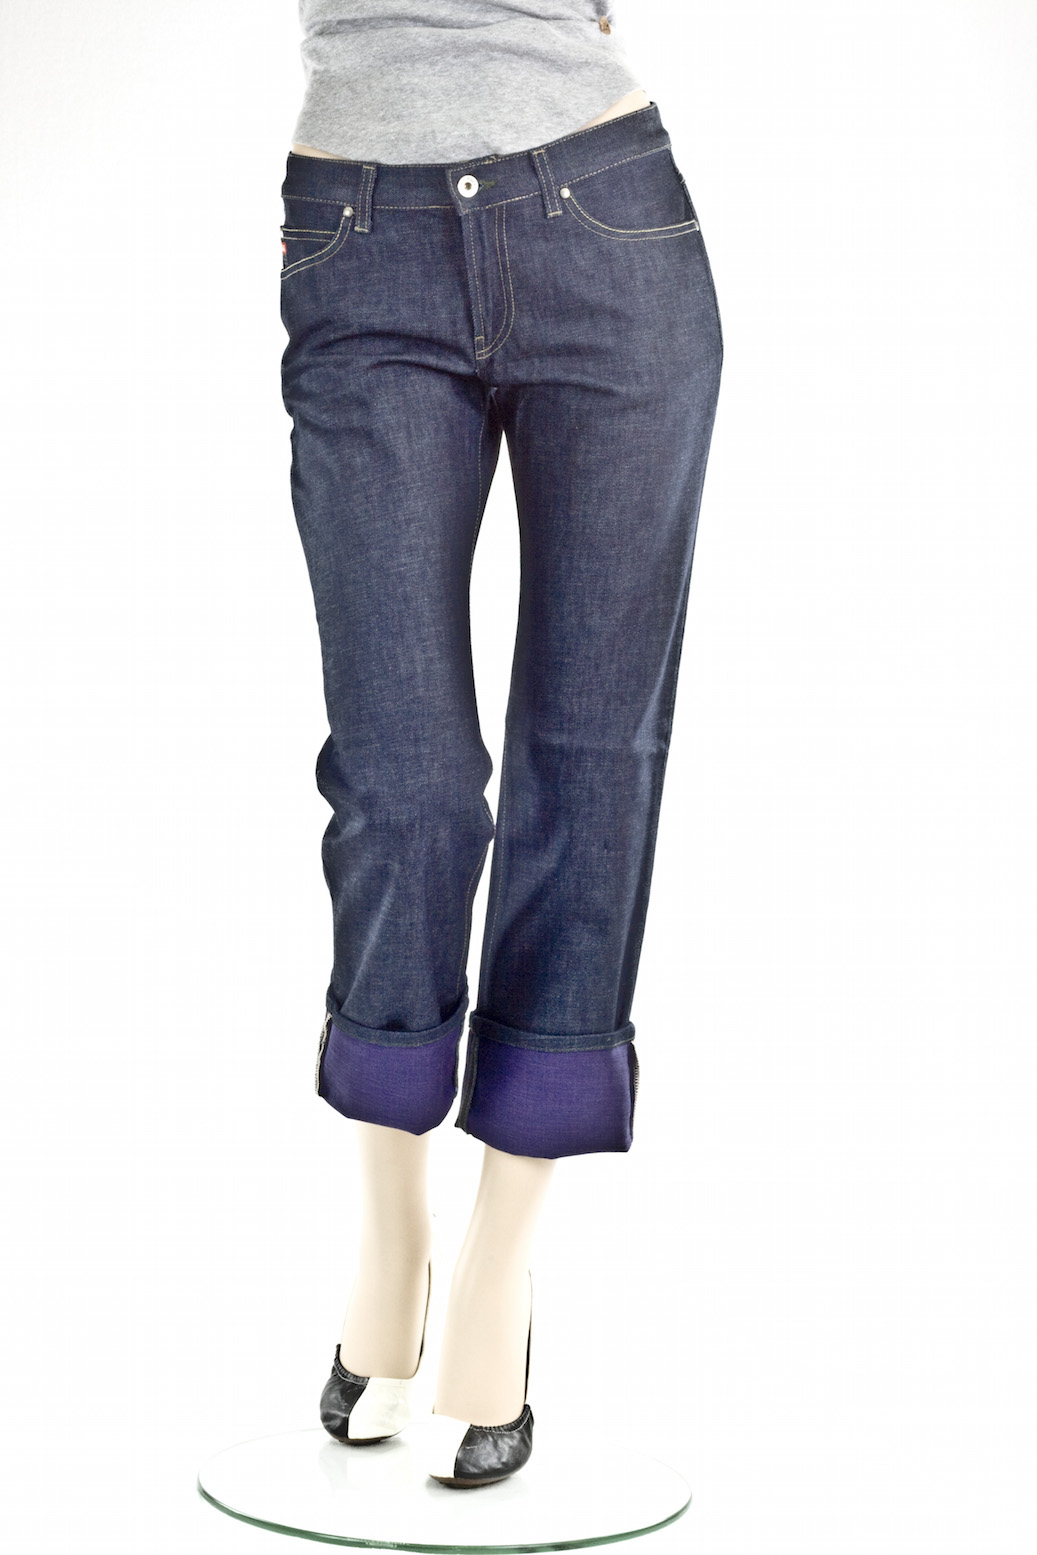 Женские джинсы Miss Sixty прямые бриджи Flip Dolly Jean интернет-магазин Fashion Jeans